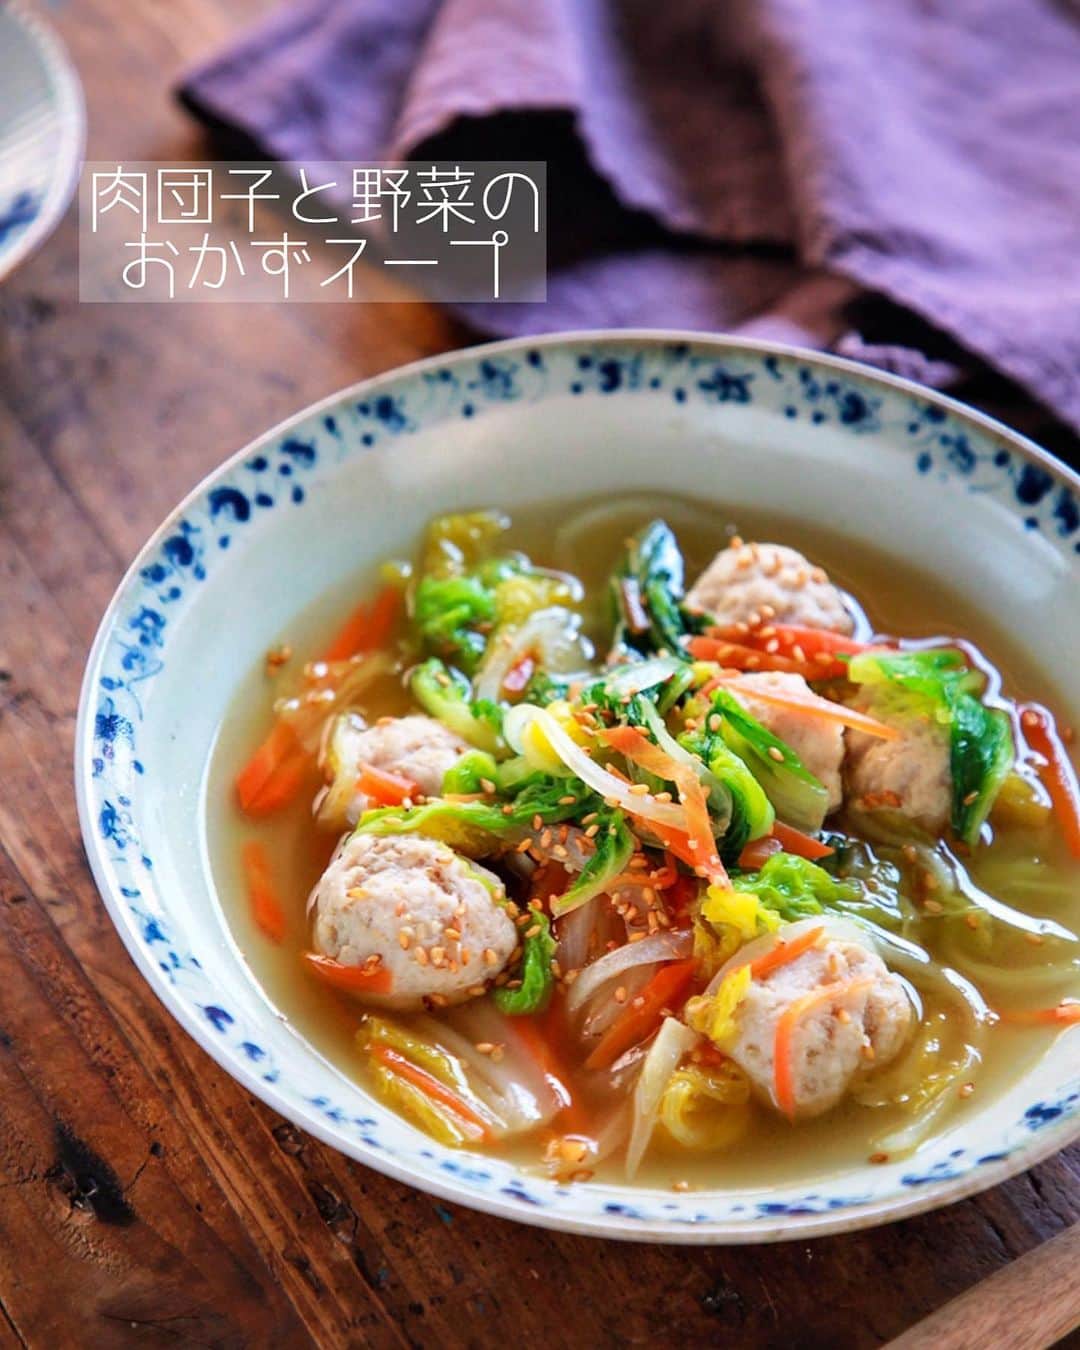 Mizuki【料理ブロガー・簡単レシピ】さんのインスタグラム写真 - (Mizuki【料理ブロガー・簡単レシピ】Instagram)「・﻿ 【#レシピ 】ーーーーーーーーーー﻿ ♡肉団子と野菜のおかずスープ♡﻿ ーーーーーーーーーーーーーーーー﻿ ﻿ ﻿ ﻿ おはようございます(*^^*)﻿ ﻿ 今日ご紹介させていただくのは﻿ メインにもなるおかずスープ♡﻿ 野菜たっぷりでヘルシーな上に﻿ 肉団子入りで食べ応えもありますよ〜♩﻿ ﻿ 作り方は超簡単(*´艸`)﻿ 肉団子は材料一気に混ぜるだけ！﻿ スープは最初に味付けするから﻿ 味がぴったり決まります♡﻿ ﻿ ひき肉も野菜もアレンジできるので﻿ お気軽にお試し下さいね(*^^*)﻿ ﻿ ﻿ ﻿ ＿＿＿＿＿＿＿＿＿＿＿＿＿＿＿＿＿＿＿＿﻿ 【2人分】﻿ ●鶏ひき肉...150g﻿ ●片栗粉・酒...各小1﻿ ●塩こしょう...少々﻿ 玉ねぎ...1/4個﻿ 人参...1/3本﻿ 白菜...100g﻿ ☆水...500ml﻿ ☆鶏がらスープ...大1﻿ ☆醤油・ごま油...各小1﻿ (好みで)ごま...適量﻿ ﻿ 1.ボウルに●を入れてよく混ぜる。玉ねぎは薄切り、人参は細切り、白菜はざく切りにする。﻿ 2.鍋に☆を入れて火にかけ、煮立ったら1の肉だねを3cm大に丸めて入れ、中火で2分煮る。続けて野菜も加え、たまに混ぜながら5分煮る。﻿ 3.器に盛り、ごまを振る。﻿ ￣￣￣￣￣￣￣￣￣￣￣￣￣￣￣￣￣￣￣￣﻿ ﻿ ﻿ ﻿ 《ポイント》﻿ ♦︎鶏ひき肉の代わりに豚ひき肉でも♩﻿ ♦︎野菜はあるものでアレンジOK♩キャベツ、小松菜、きのこ、長ねぎなども合います♩﻿ ﻿ ﻿ ﻿ ﻿ ﻿ ﻿ ﻿ ＿＿＿＿＿＿＿＿＿＿＿＿＿＿＿＿＿＿﻿ 🔔テレビ出演のお知らせ🔔﻿ 本日より2週間(21：55〜 月-木)﻿ 【NHK Eテレ #まる得マガジン 】﻿ 2回目の放送が始まります(内容は同じ)✨﻿ 俳優の武田航平さん﻿ (@kouhei_takeda.official )と一緒に﻿ 絶品おやつから意外なランチまで﻿ たくさん作らせていただきますよ♩﻿ ﻿ ＊NHKテキスト発売中📕﻿ ￣￣￣￣￣￣￣￣￣￣￣￣￣￣￣￣￣￣﻿ ﻿ ﻿ ﻿ ﻿ ﻿ ⭐️発売中⭐️3刷重版が決まりました😭﻿ 本当にありがとうございます(涙)﻿ _____________________________________﻿ \15分でいただきます/﻿ 📕#Mizukiの2品献立 📕﻿ (9月24日発売・マガジンハウス)﻿ ￣￣￣￣￣￣￣￣￣￣￣￣￣￣￣￣￣﻿ ﻿ 忙しい私たちには﻿ 2品くらいがちょうどいい！﻿ 『しんどくない献立、考えました』﻿ ￣￣￣￣￣￣￣￣￣￣￣￣￣￣￣￣﻿ ﻿ ーーーーーPART.1 ーーーーー﻿ 【Mizukiのお墨つき！２品献立ベスト10】﻿ 約15分でできる10献立をご紹介！﻿ メインは全部フライパン、副菜はレンチンor混ぜるだけ♡﻿ ﻿ ーーーーーPART.2 ーーーーー﻿ 【フライパンひとつ！今夜のメインおかず】﻿ 献立の主役になる肉や魚のおかず50品！﻿ Part3の副菜と組み合わせれば﻿ 献立のバリエーションが広がりますよ♩﻿ ﻿ ーーーーー PART.3 ーーーーー﻿ 【合間に作れる！ 野菜別かんたん副菜】﻿ レンチンor和えるだけの副菜レシピを﻿ 素材別にたっぷり収録♩﻿ ﻿ ーーーーー番外編ーーーーー﻿ 【ひとつで満足！ご飯＆麺】﻿ 【具だくさん！おかずスープ】﻿ 【オーブンいらずのおやつレシピ】﻿ ￣￣￣￣￣￣￣￣￣￣￣￣￣￣￣￣￣￣﻿ (ハイライトにリンク🔗あります💗)﻿ ﻿ ﻿ ﻿ ﻿ ＿＿＿＿＿＿＿＿＿＿＿＿＿＿＿＿＿＿﻿ レシピを作って下さった際や﻿ レシピ本についてのご投稿には﻿ タグ付け( @mizuki_31cafe )して﻿ お知らせいただけると嬉しいです😊💕﻿ ￣￣￣￣￣￣￣￣￣￣￣￣￣￣￣￣￣￣﻿ ﻿ ﻿ ﻿ ﻿ #ひき肉#肉団子#鶏つくね#野菜#スープ#Mizuki#簡単レシピ#時短レシピ#節約レシピ#料理#フーディーテーブル#マカロニメイト#おうちごはん#デリスタグラマー#料理好きな人と繋がりたい#食べ物#料理記録#おうちごはんlover#写真好きな人と繋がりたい#foodpic#cooking#recipe#lin_stagrammer#foodporn#yummy#f52grams#肉団子と野菜のおかずスープm」11月19日 6時33分 - mizuki_31cafe